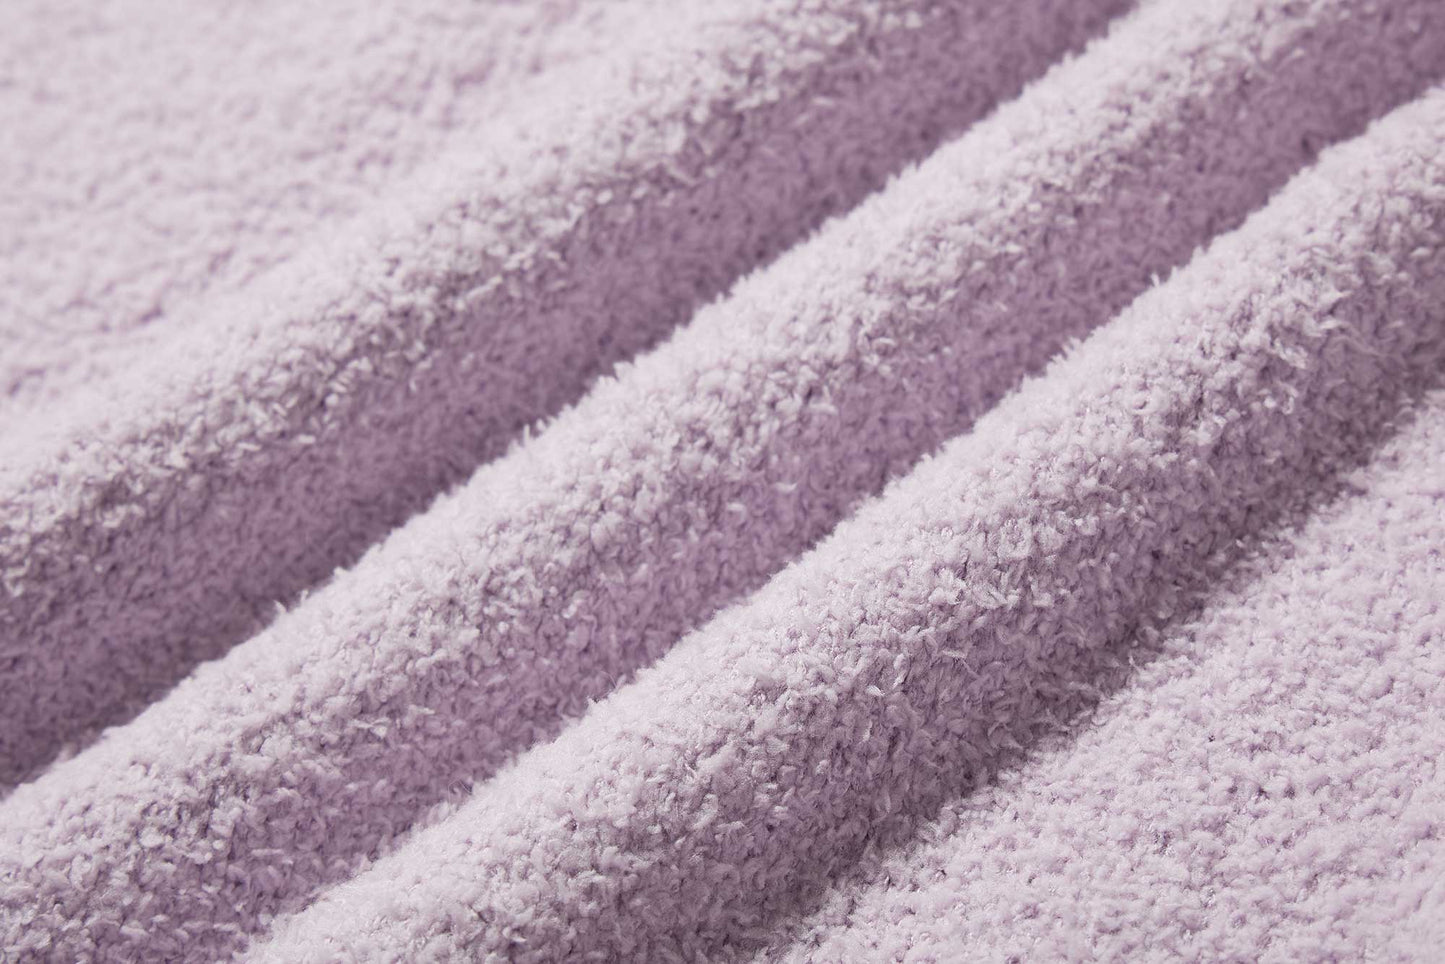 Fabric details of plush fleece pajamas